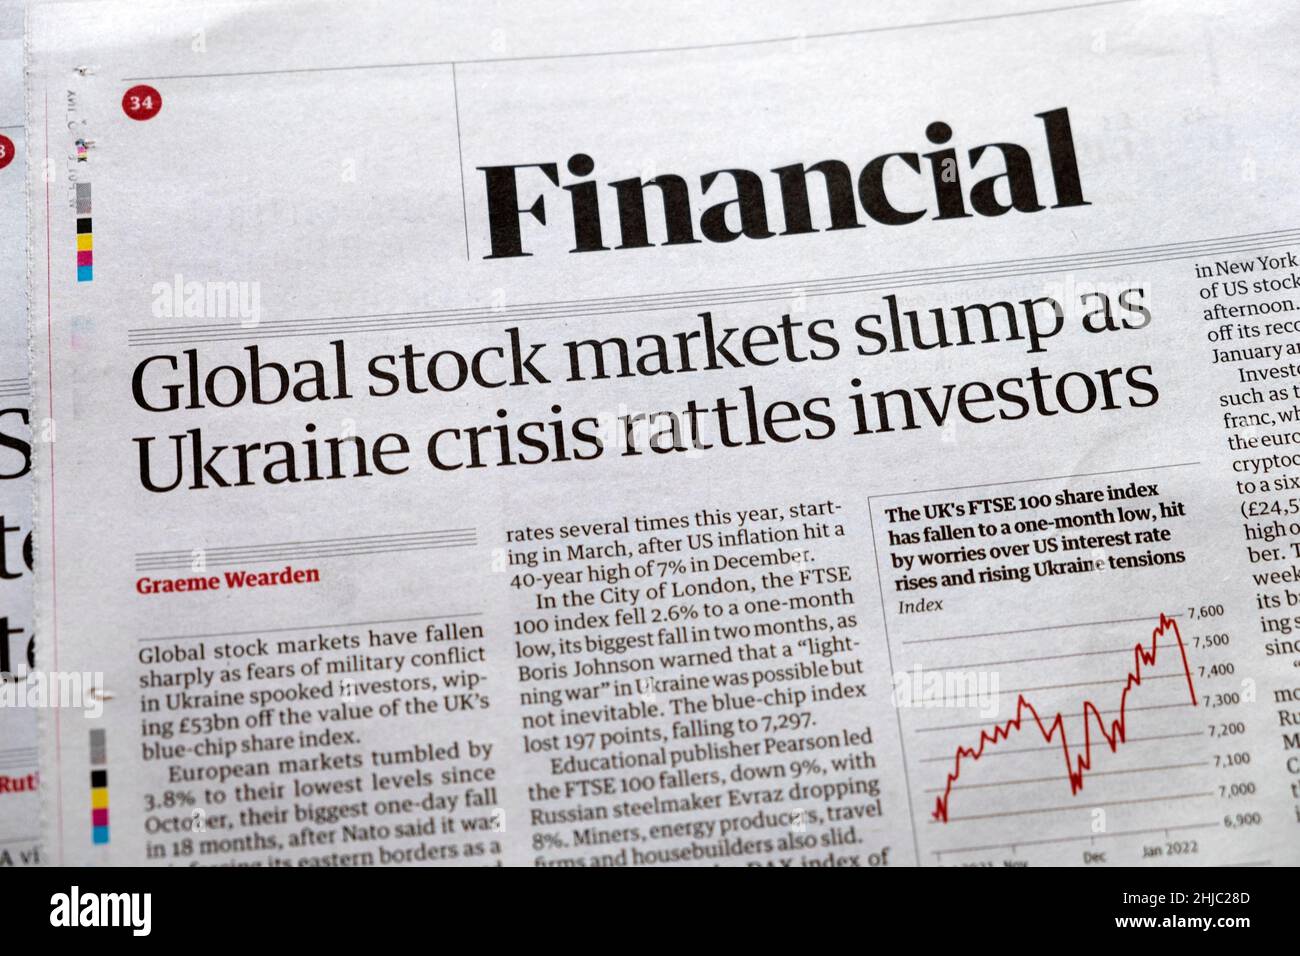 "I mercati azionari globali crollato come la crisi Ucraina batte gli investitori" pagina finanziaria del giornale Guardian titolo 24 gennaio 2022 a Londra UK Foto Stock